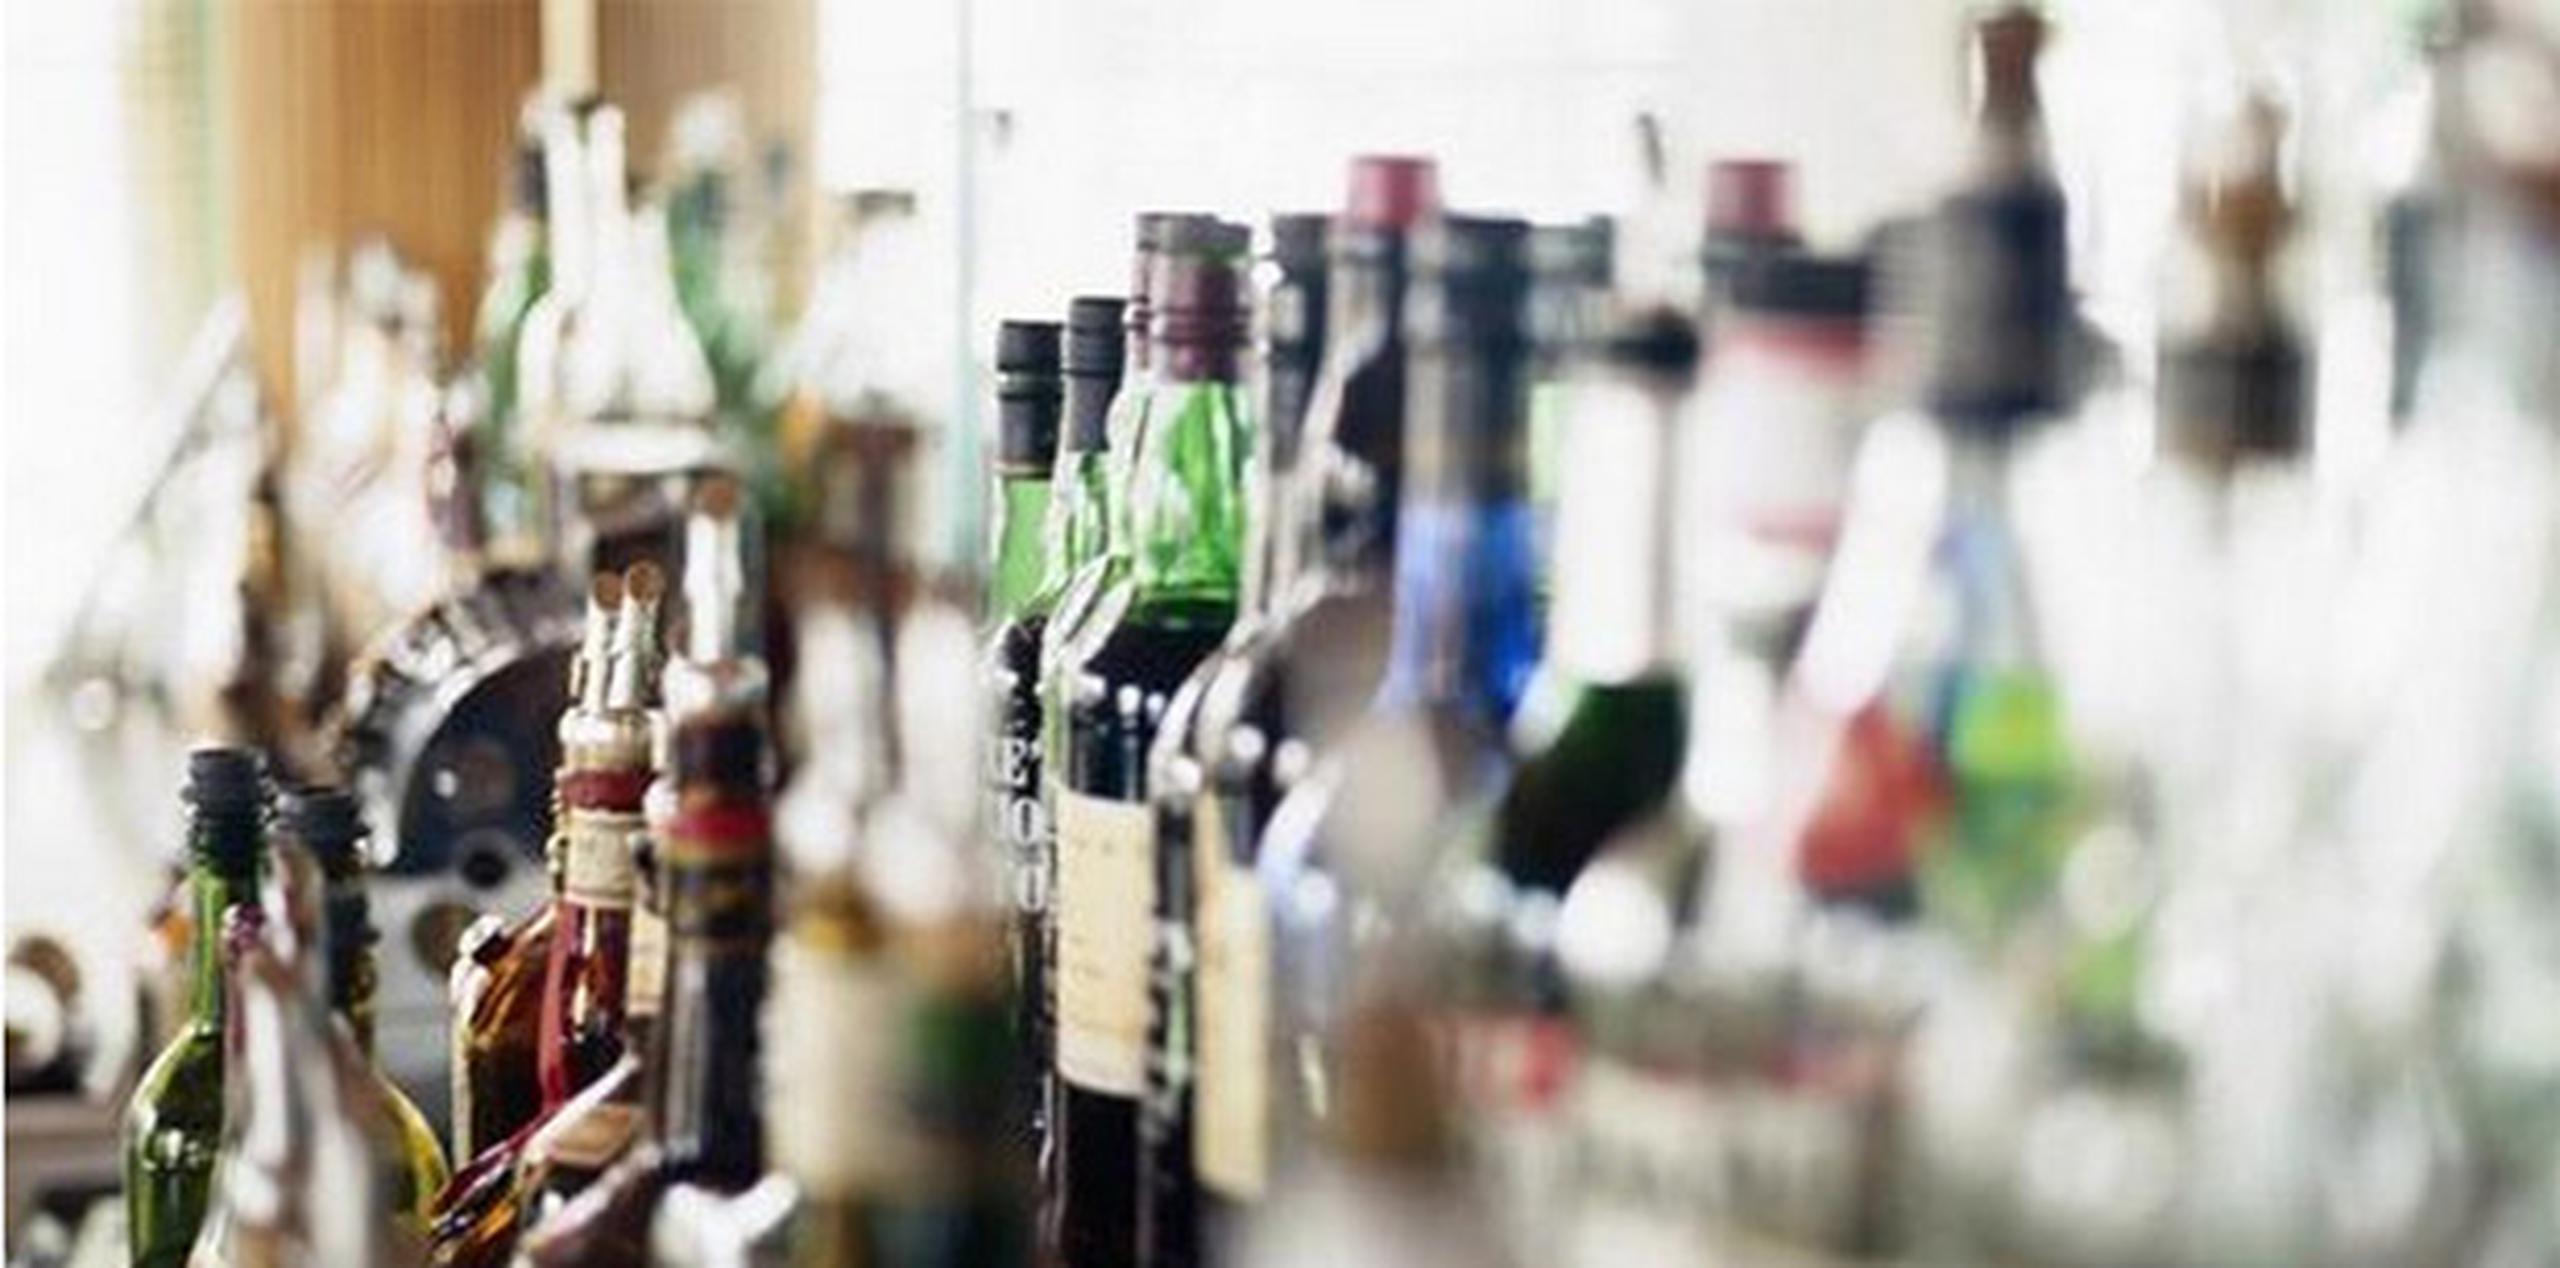 El negocio The Bear Tavern recibió multas por la suma de $3,500 por presuntamente poseer bebidas sin pagar impuestos, alterar bebidas alcohólicas y diluirlas y por servir bebidas no identificadas. (Archivo)